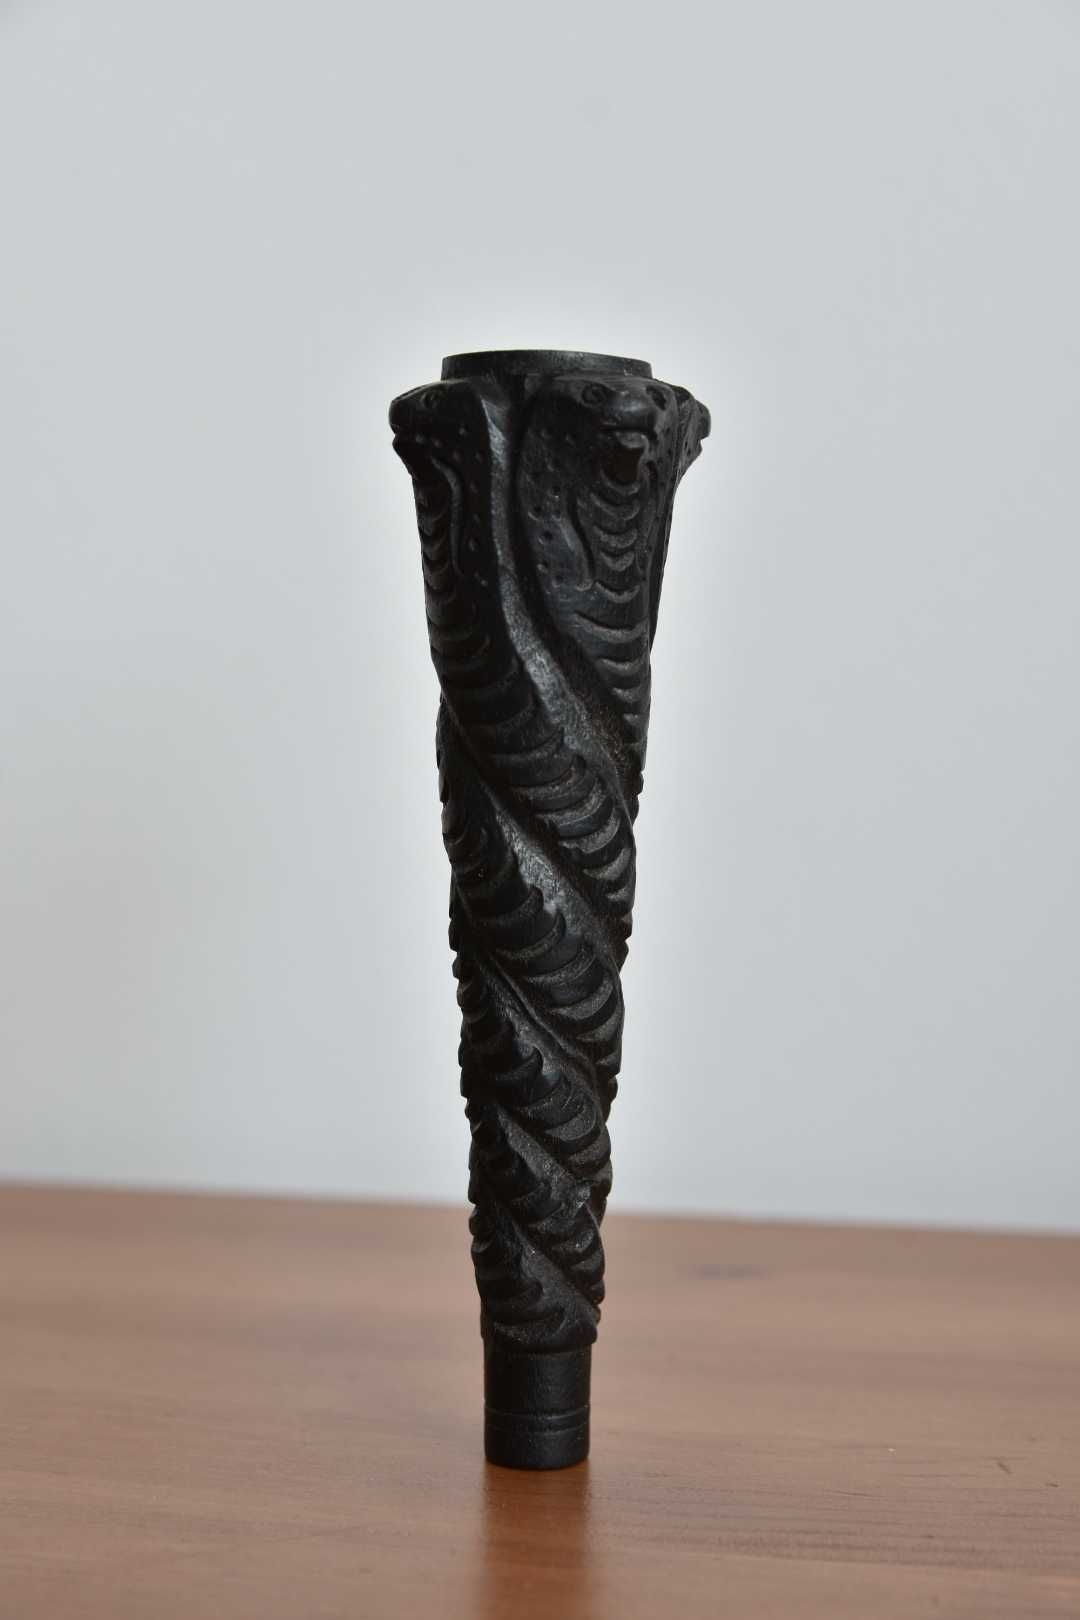 Fajka rzeźbiona w drewnie, kolekcjonerska, z Indii, Indie motyw w węże